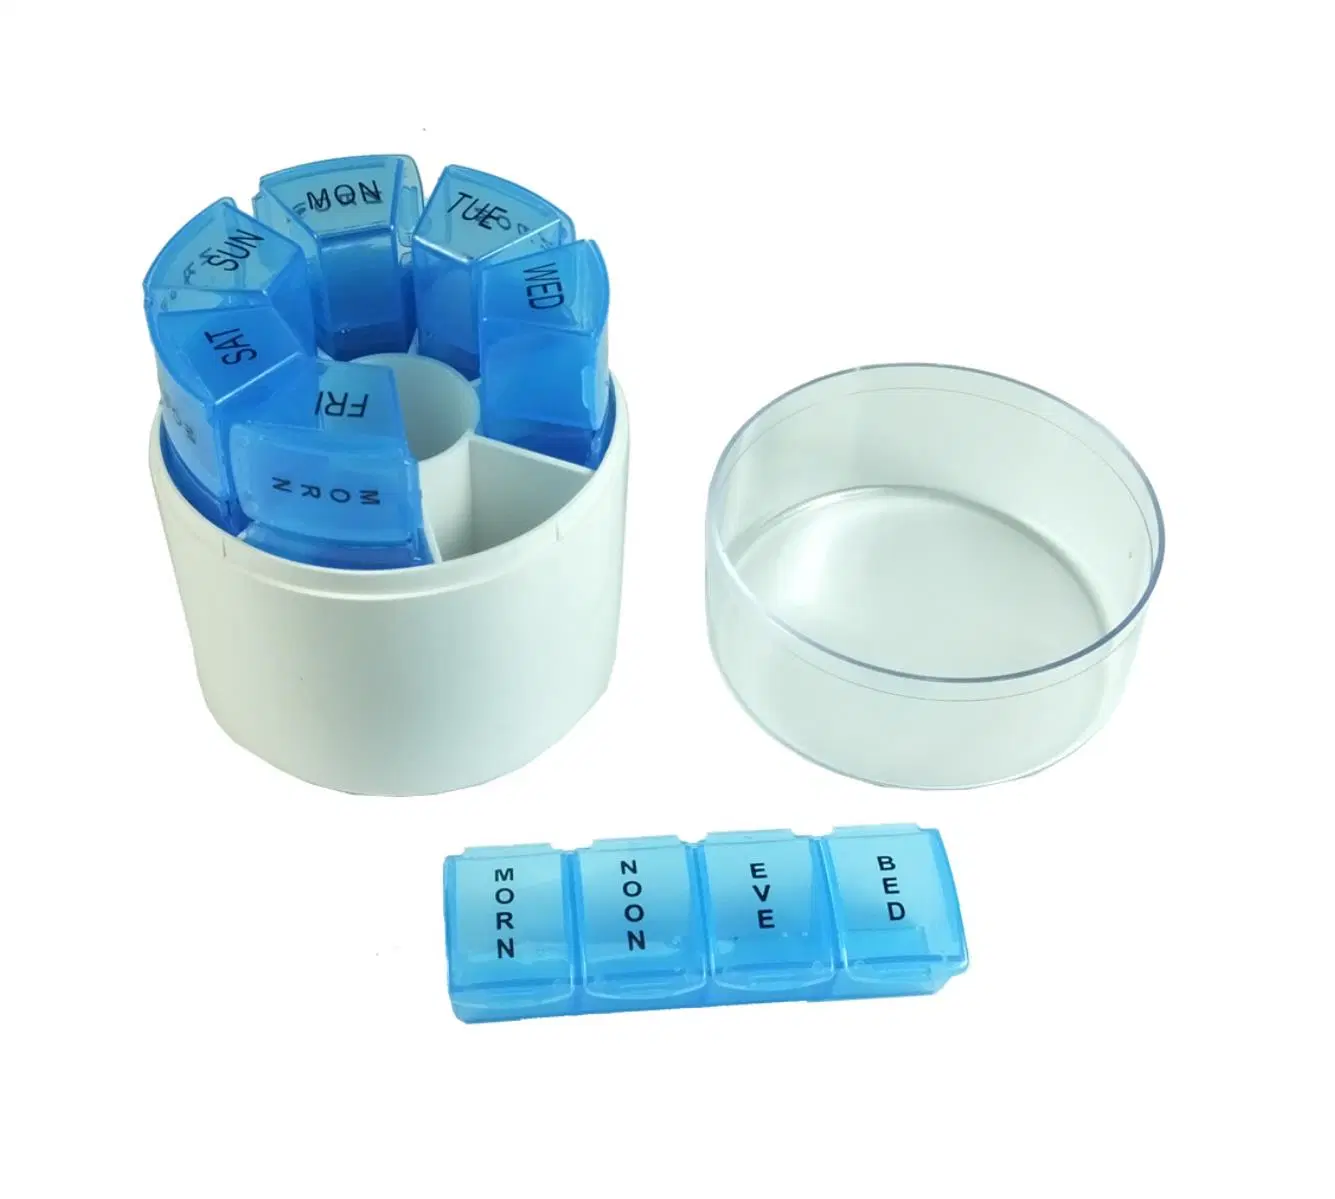 Organizador semanal de pastillas 28 cajas de plástico Organizador de pastillas Am Pm con 7 compartimentos diarios para guardar cajas de almacenamiento de vitaminas.